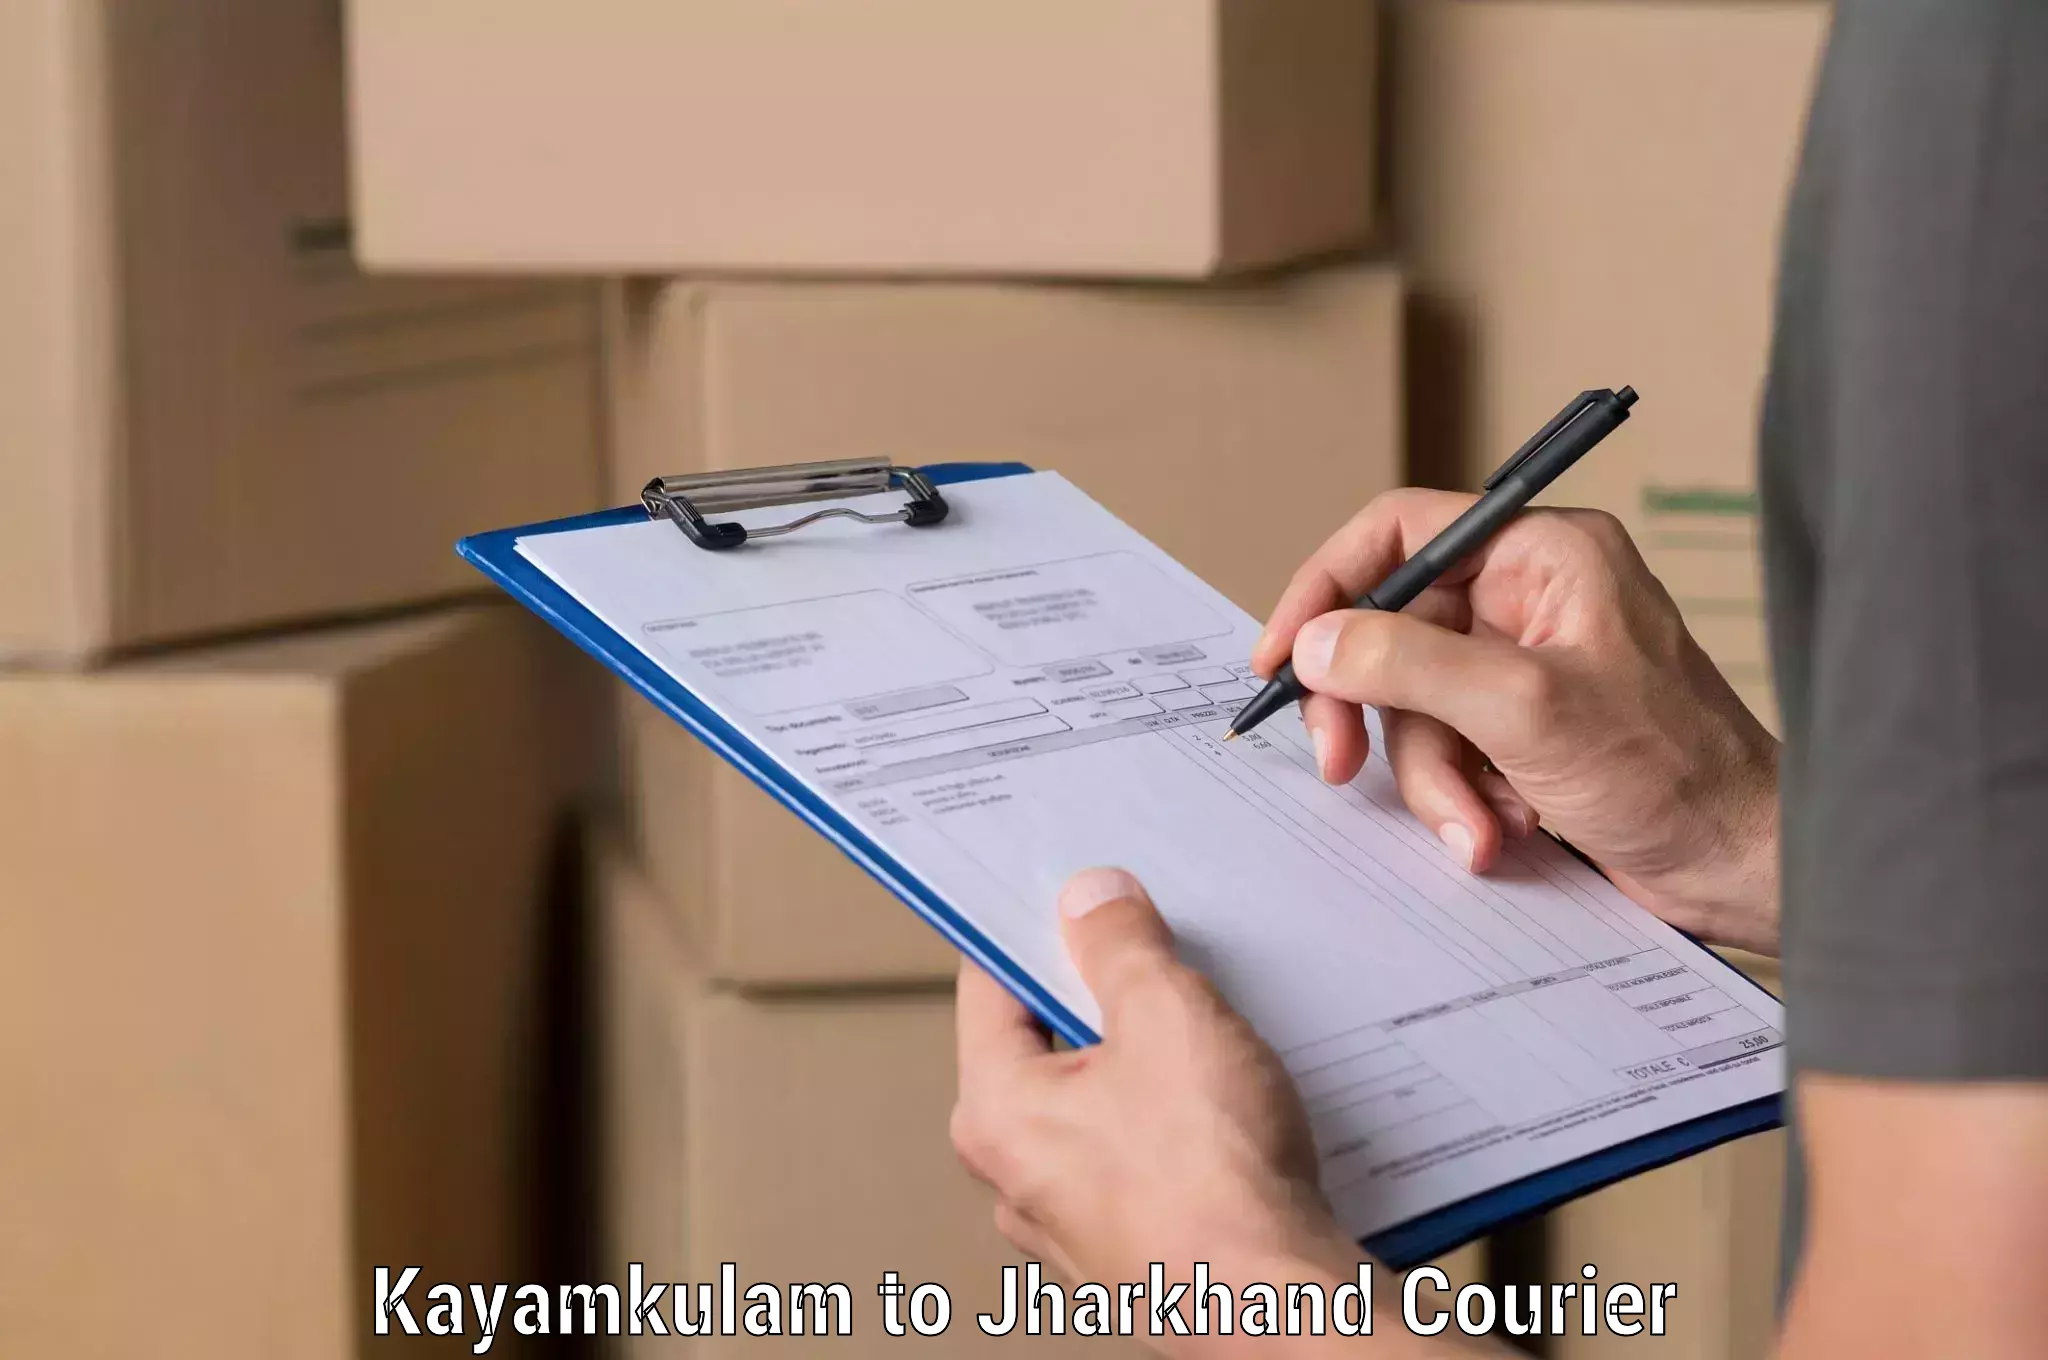 Delivery service partnership Kayamkulam to Rajmahal